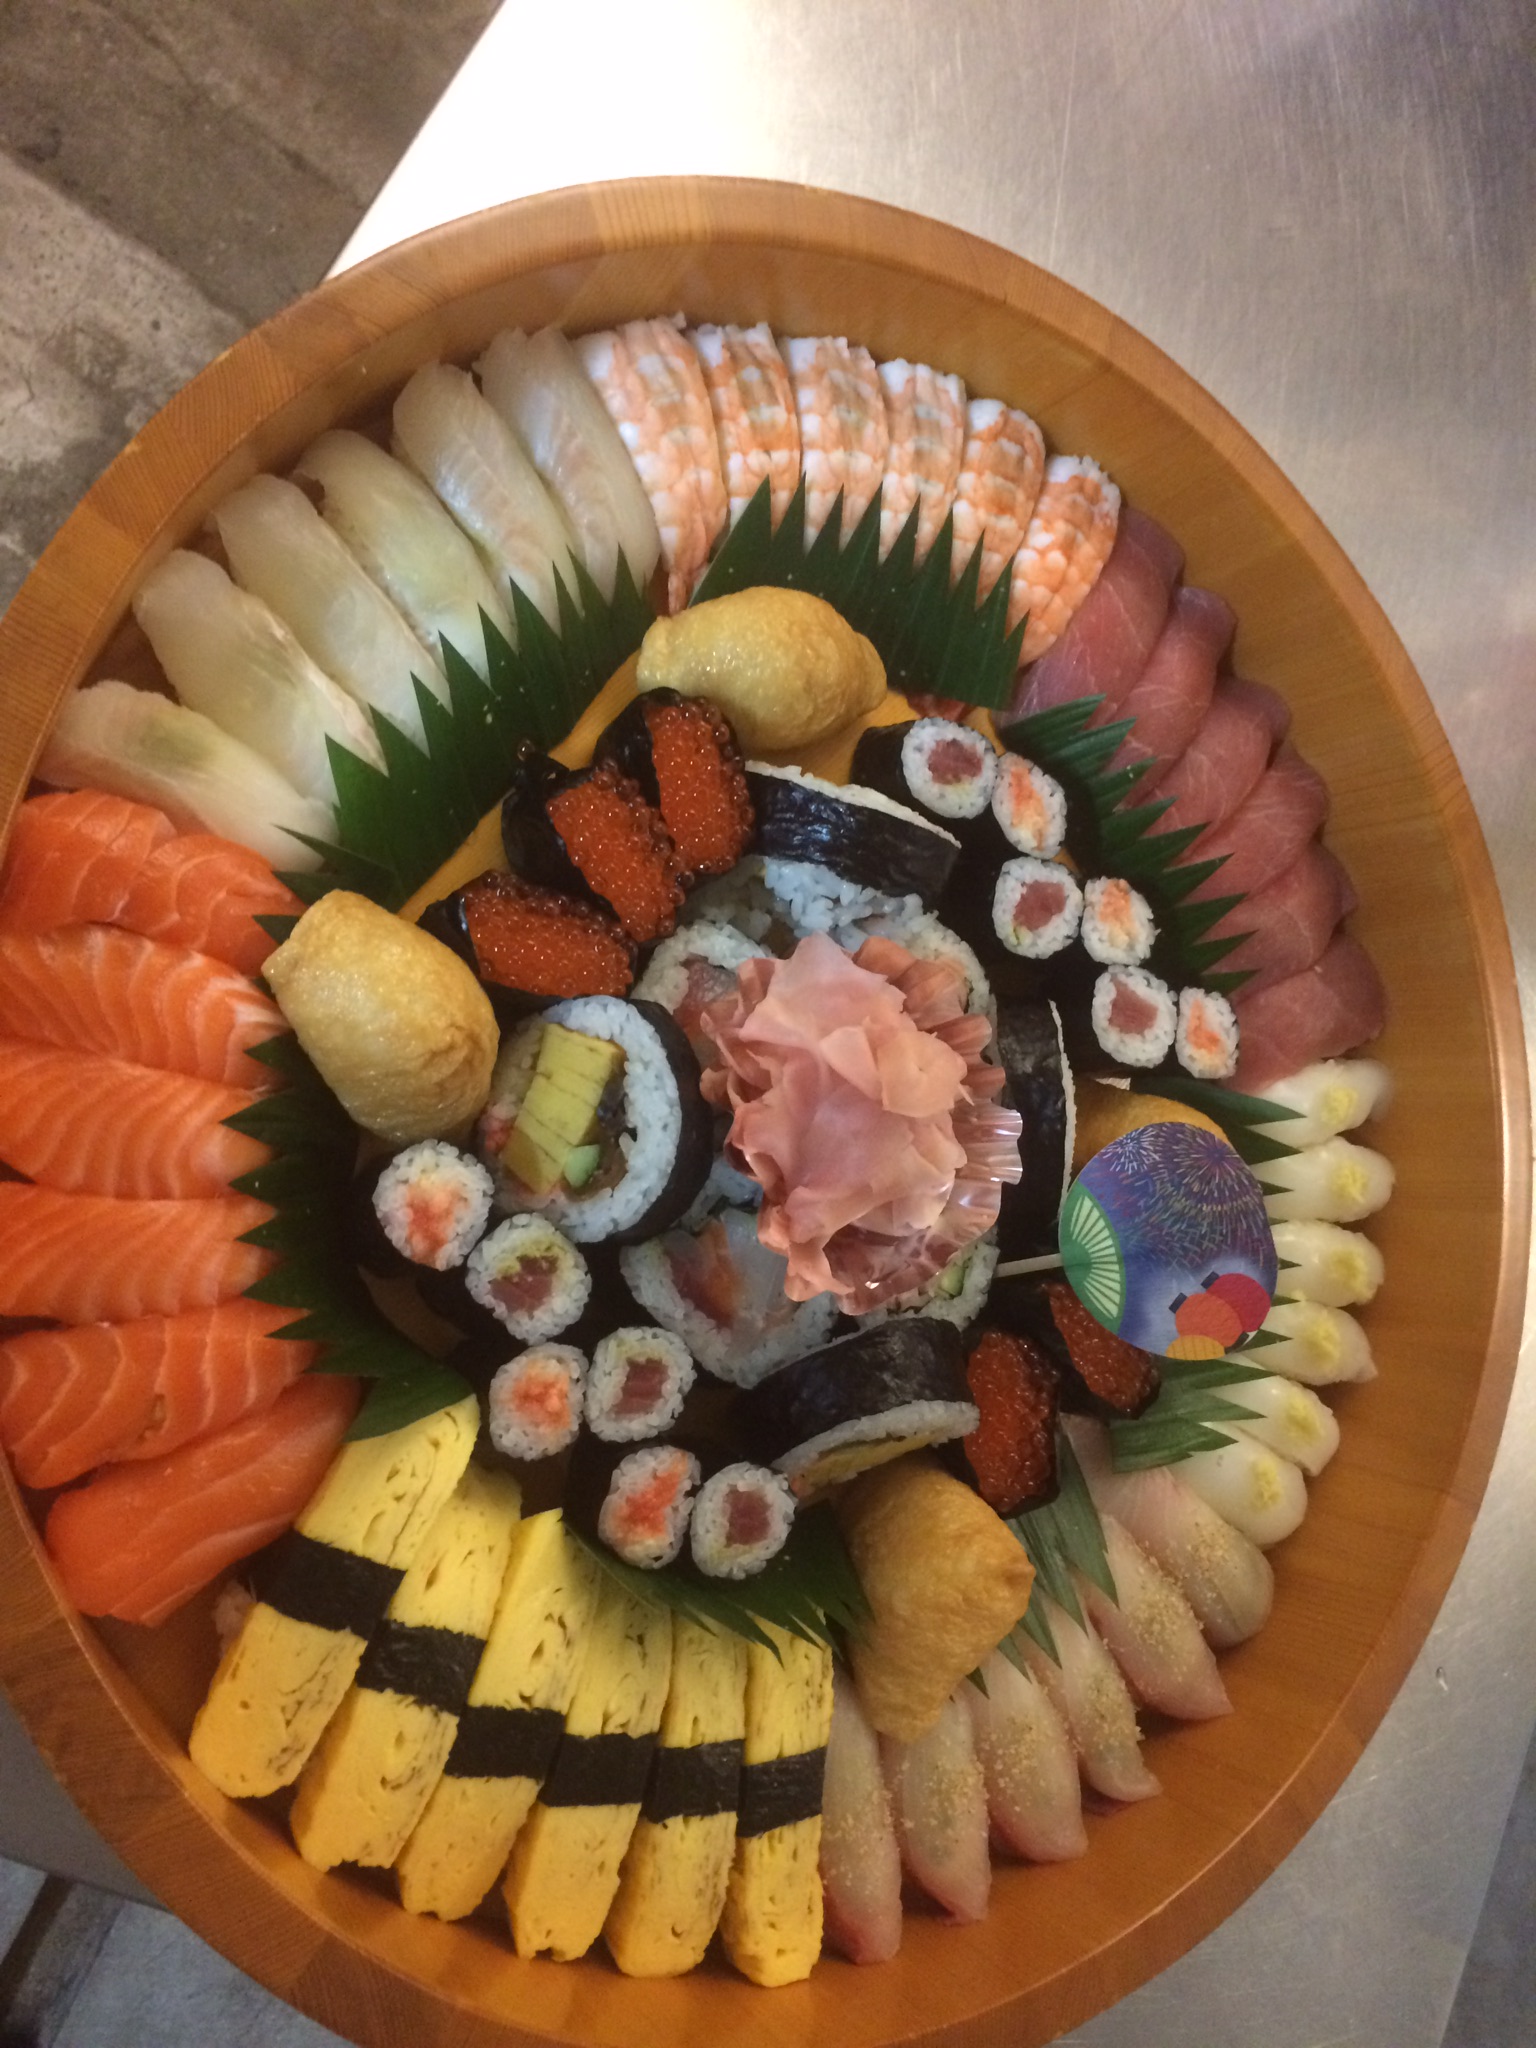 見ても美味しい、食べても美味しい。お寿司の盛り合わせは食卓を明るく致します。